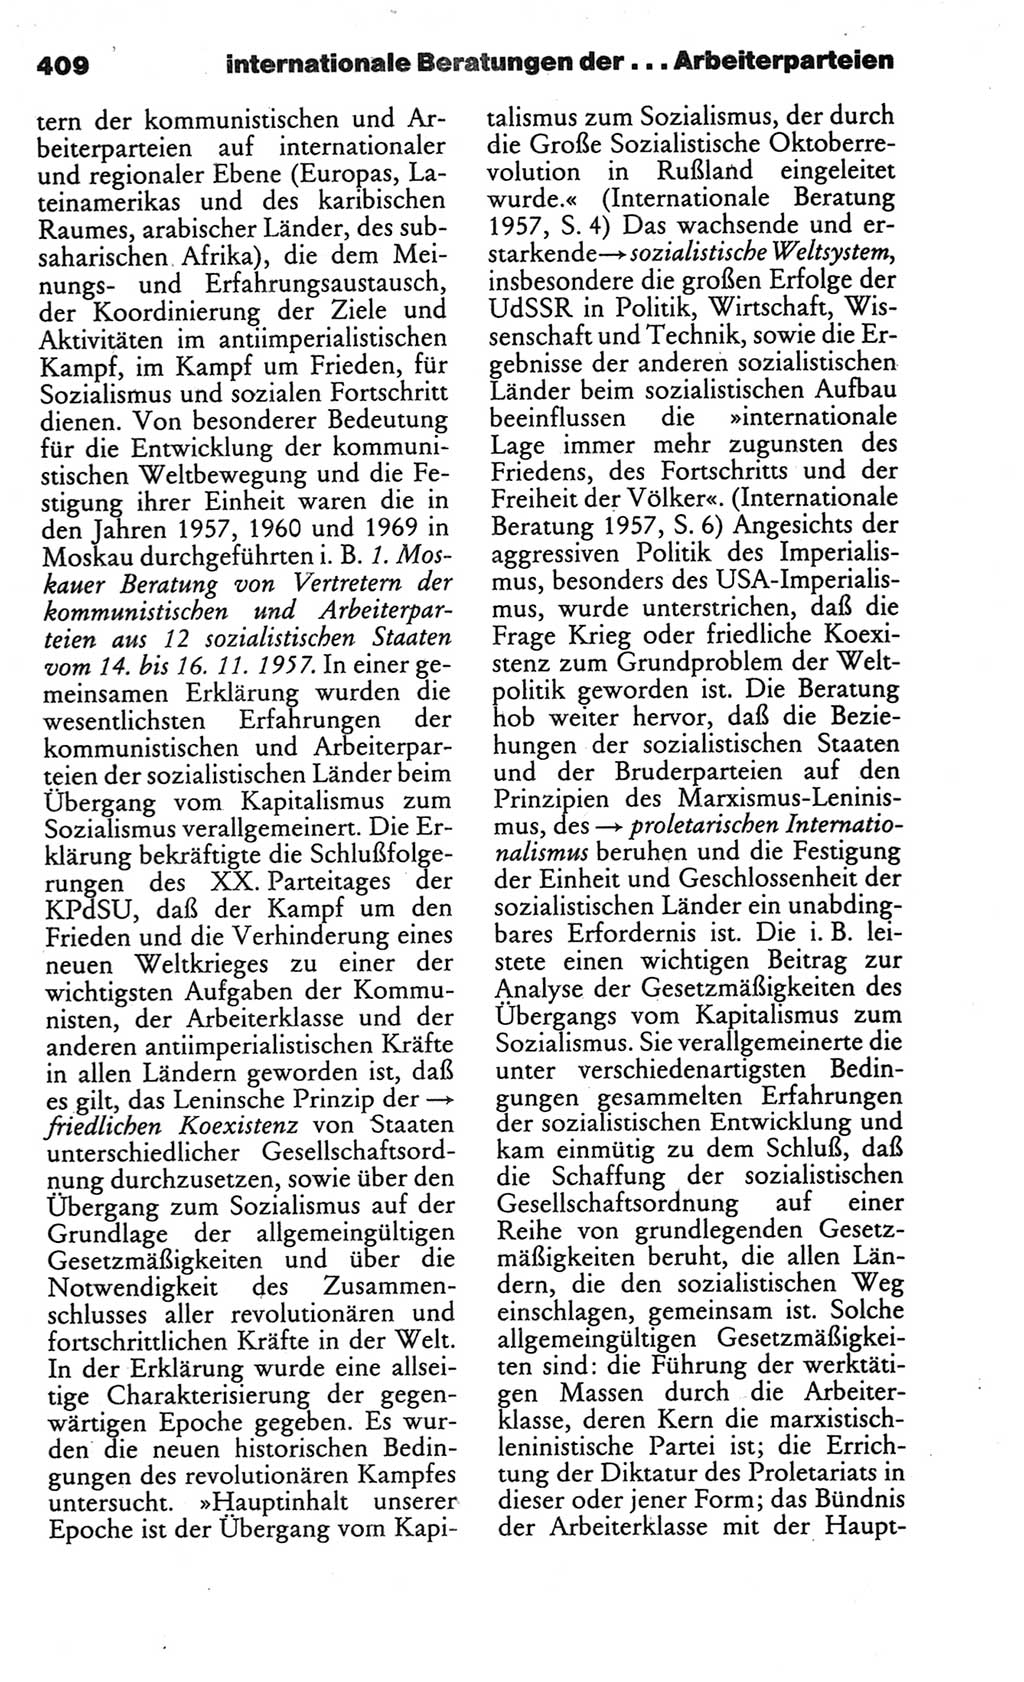 Kleines politisches Wörterbuch [Deutsche Demokratische Republik (DDR)] 1986, Seite 409 (Kl. pol. Wb. DDR 1986, S. 409)